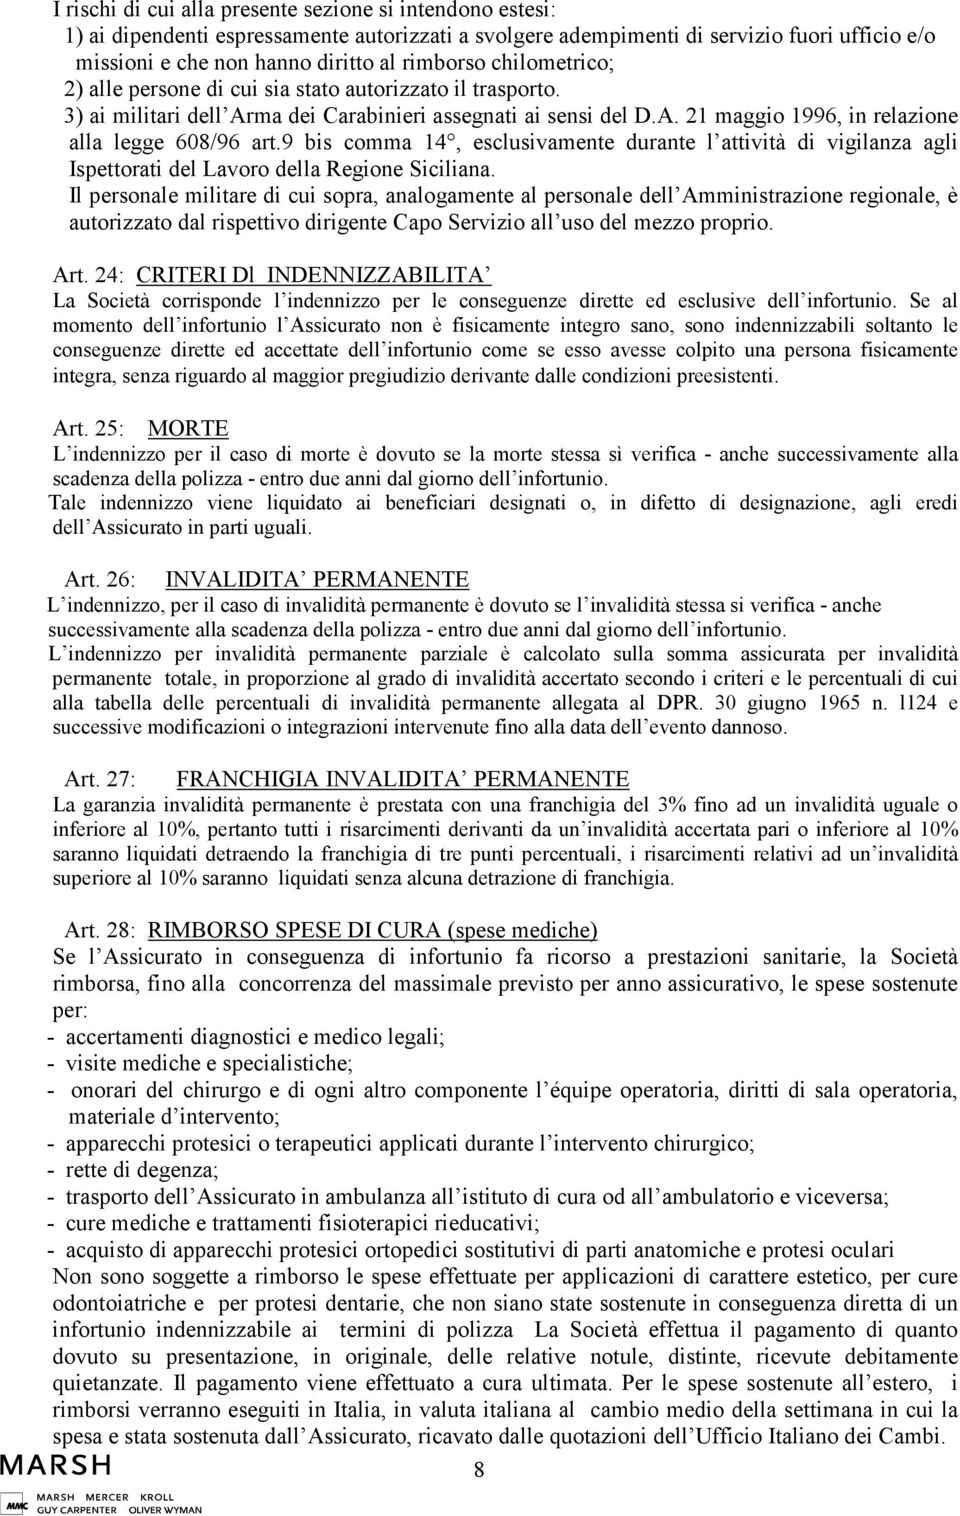 9 bis comma 14, esclusivamente durante l attività di vigilanza agli Ispettorati del Lavoro della Regione Siciliana.